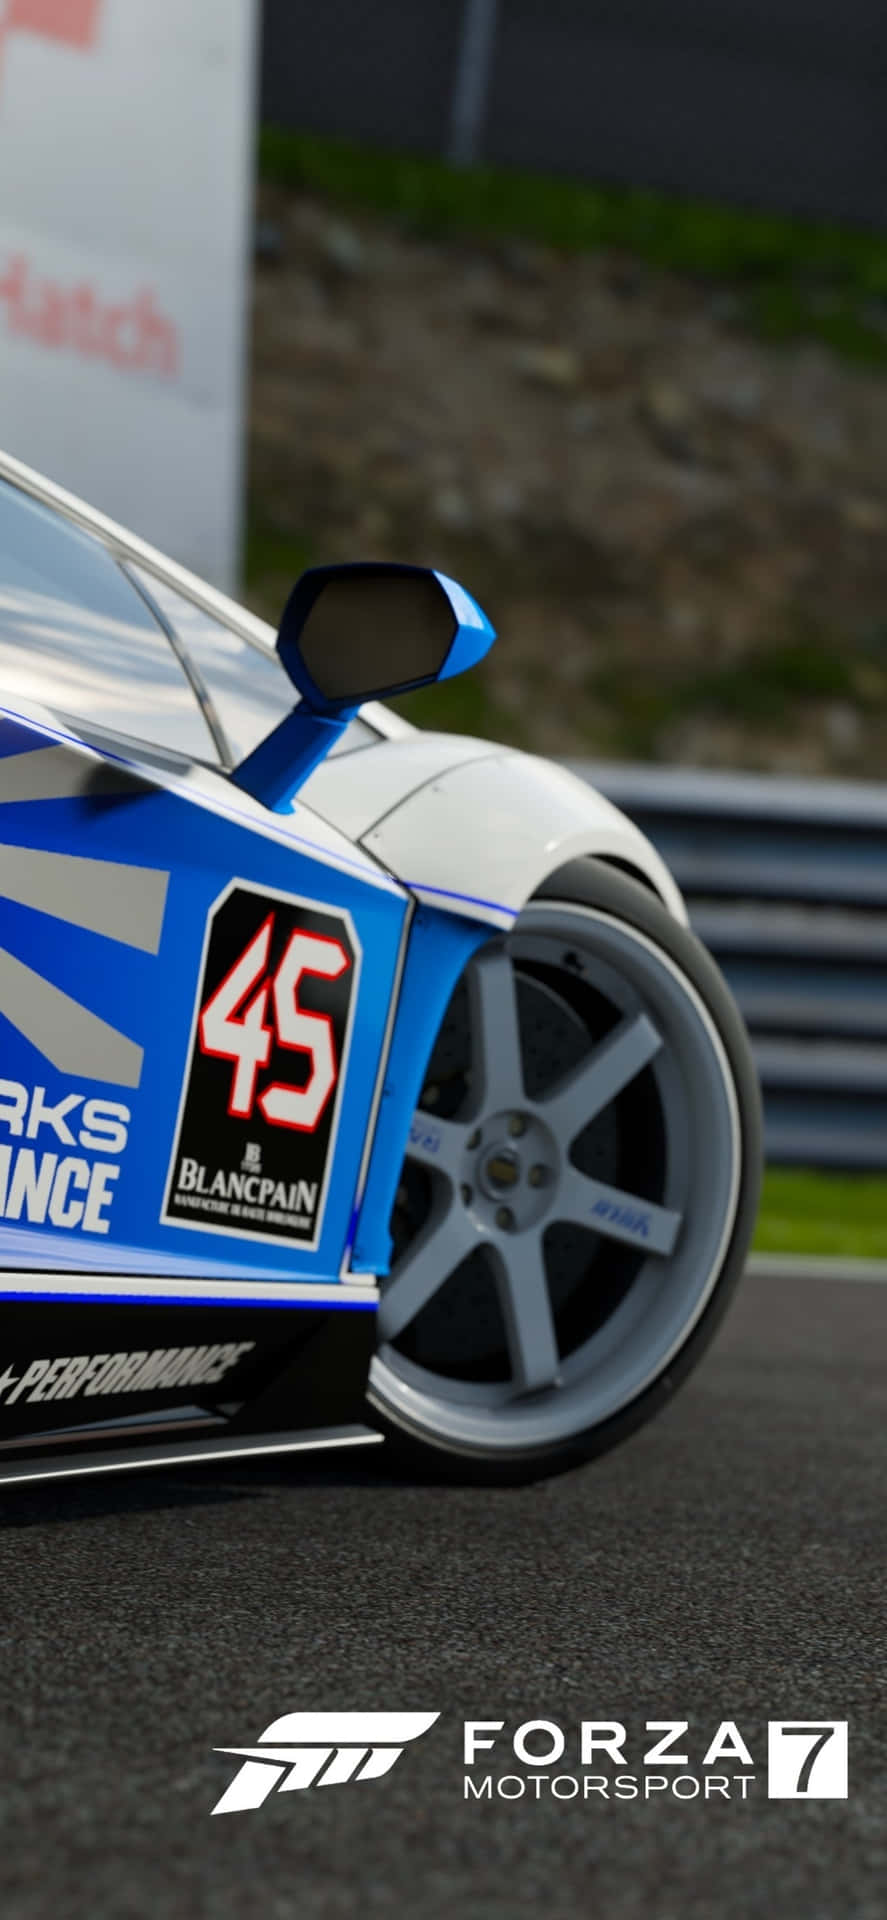 Fondode Pantalla De Forza Motorsport 7 Para Iphone X De Coche Blanco Y Azul.